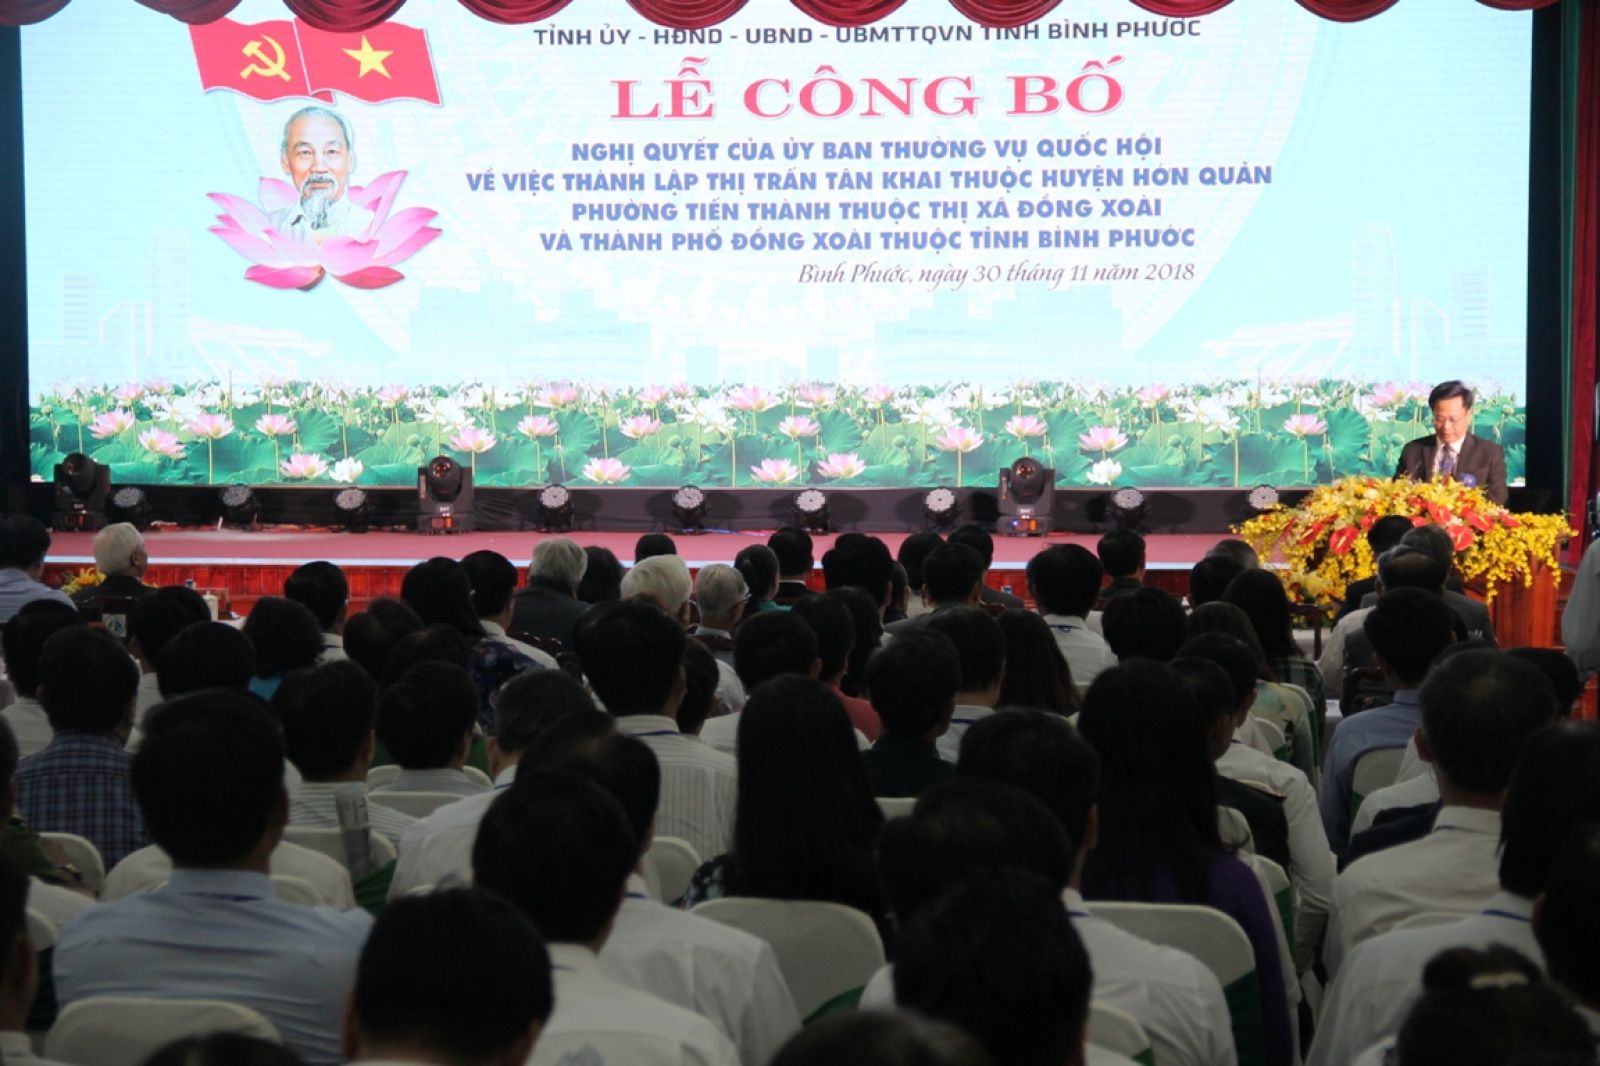 Đồng Xoài chính thức trở thành thành phố trực thuộc tỉnh Bình Phước kể từ ngày 1/12/2018